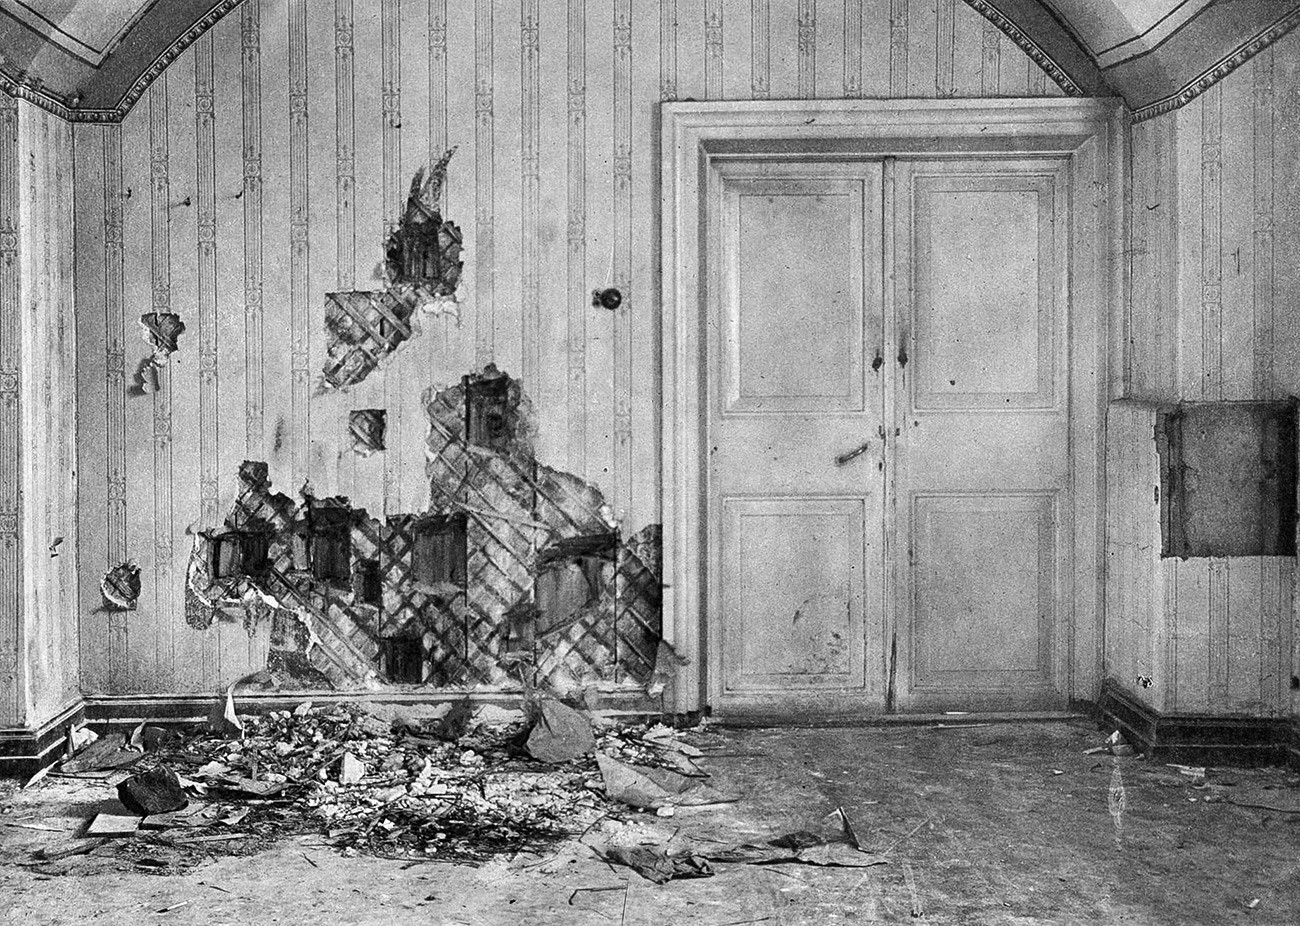 エカテリンブルクのイパチェフ館、皇帝一家と従者たちの殺害が実行された地下2階。